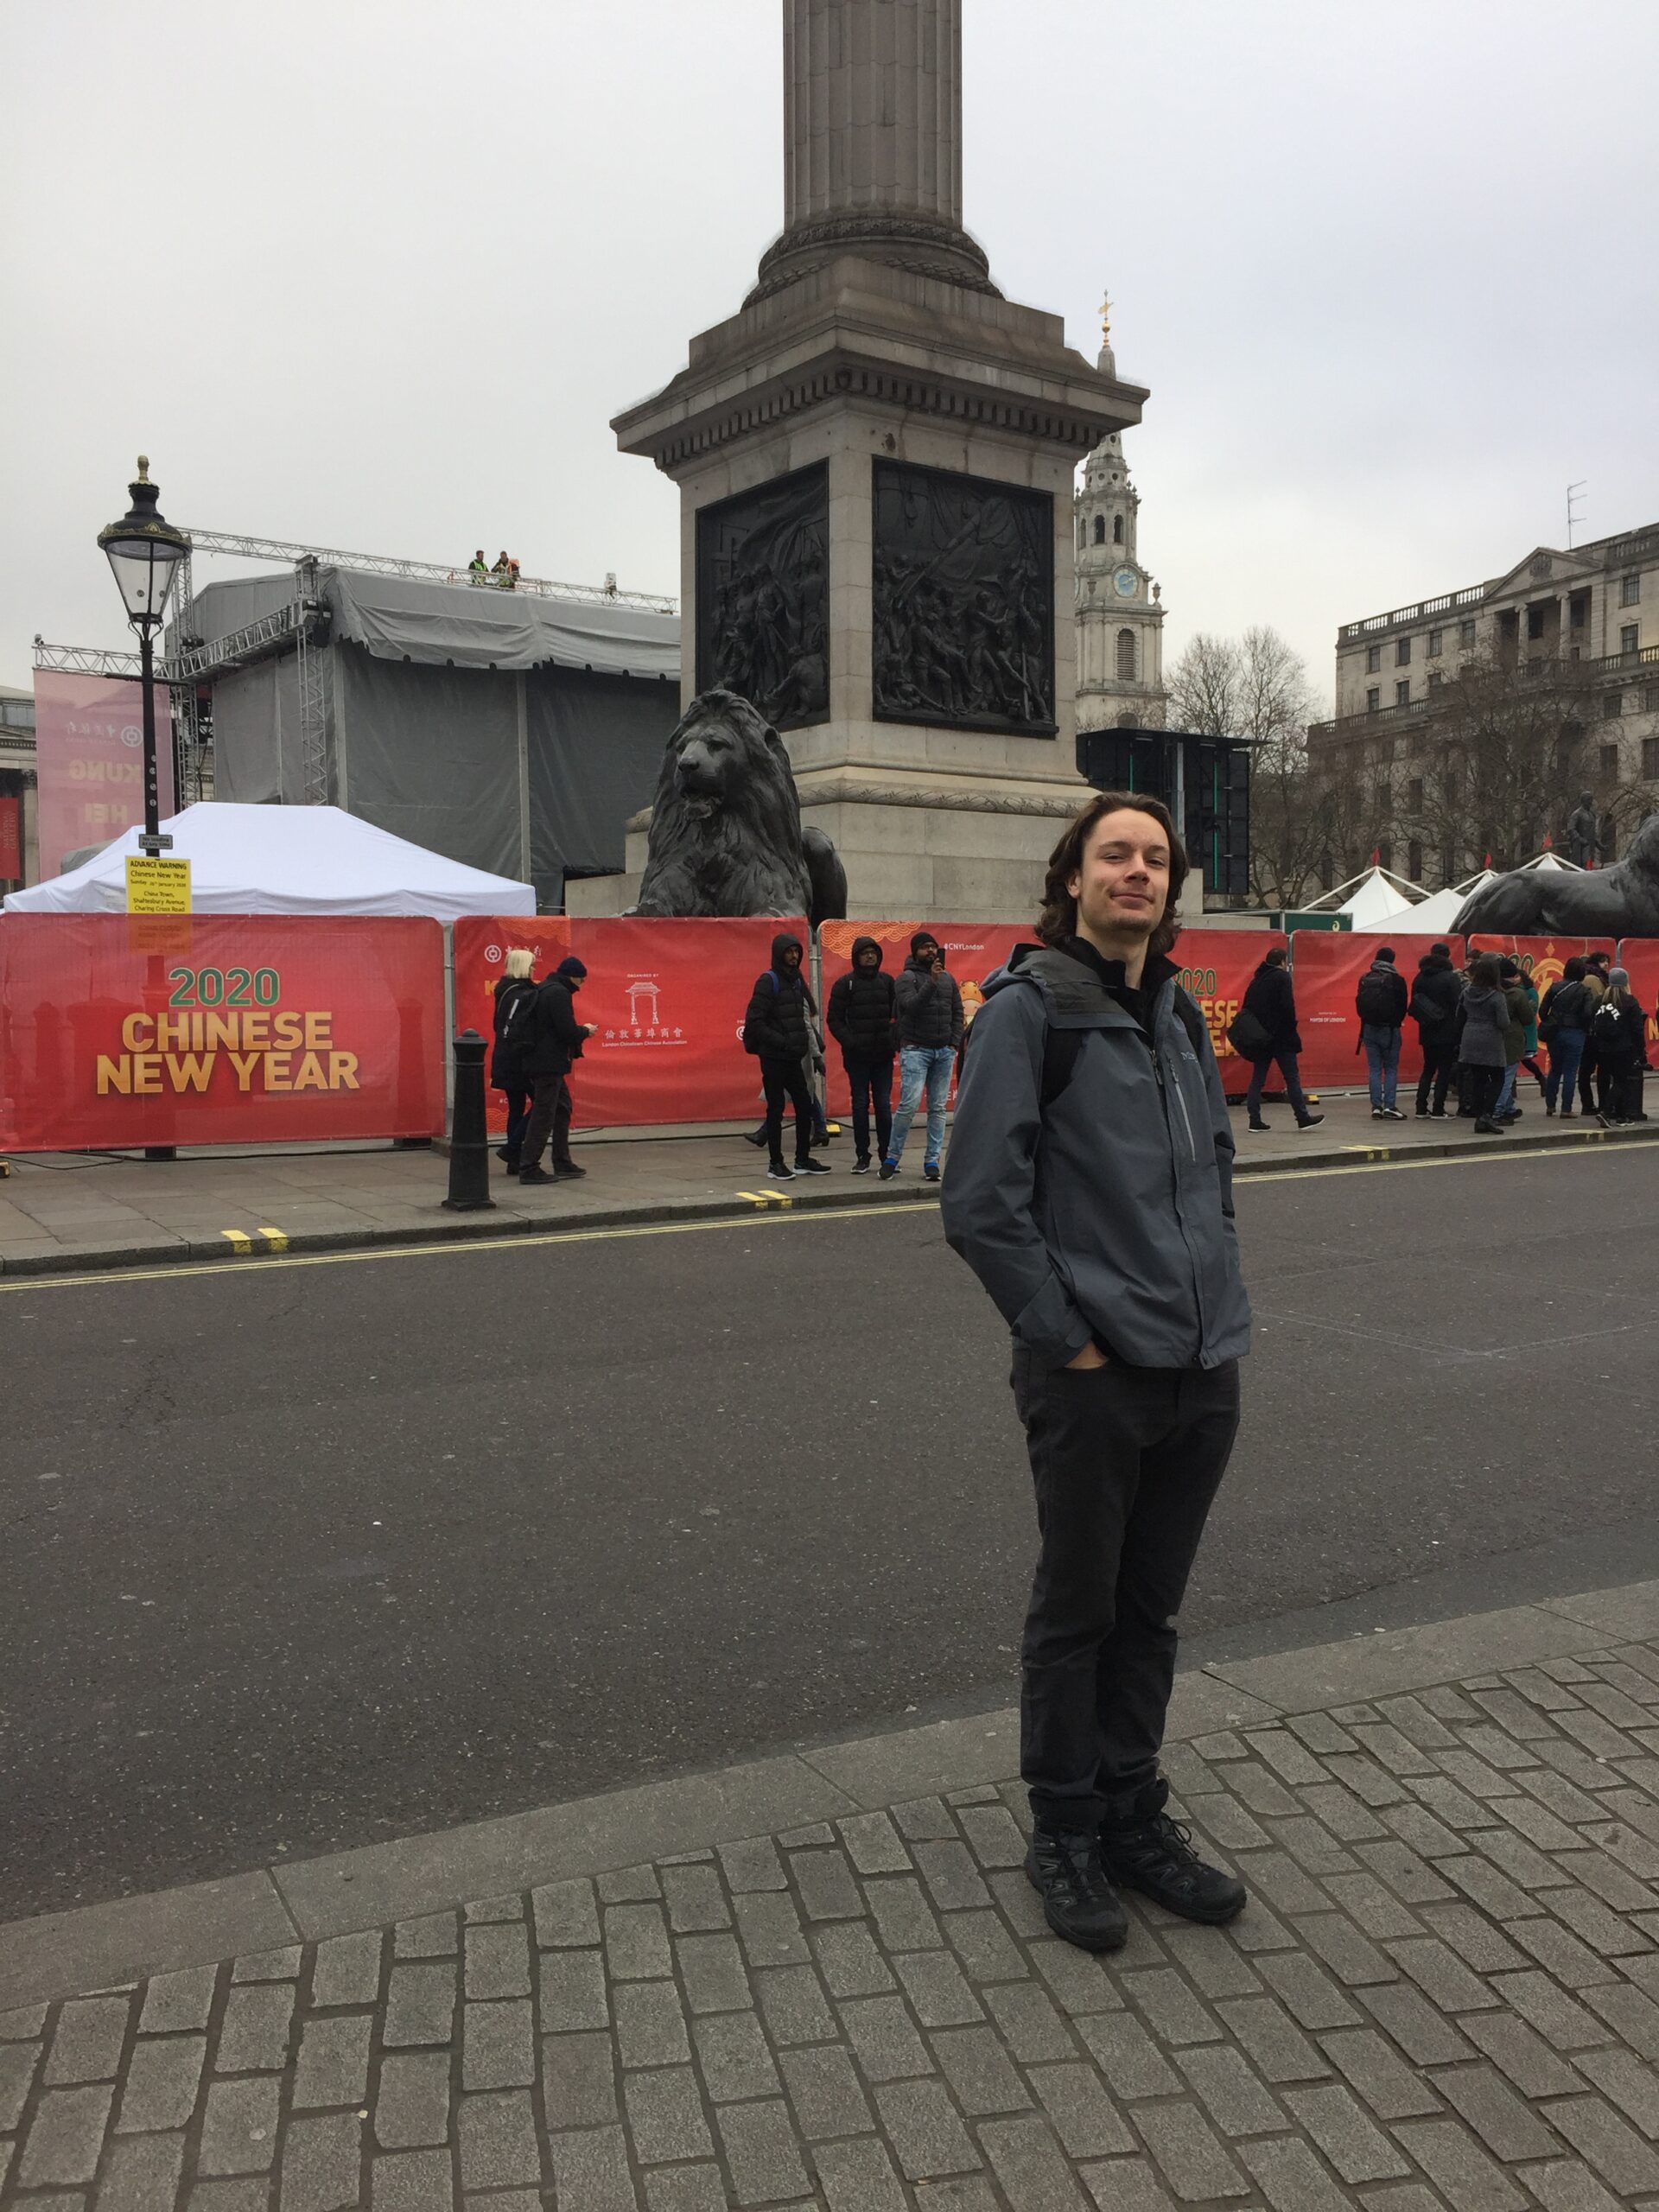 Me in Trafalgar square